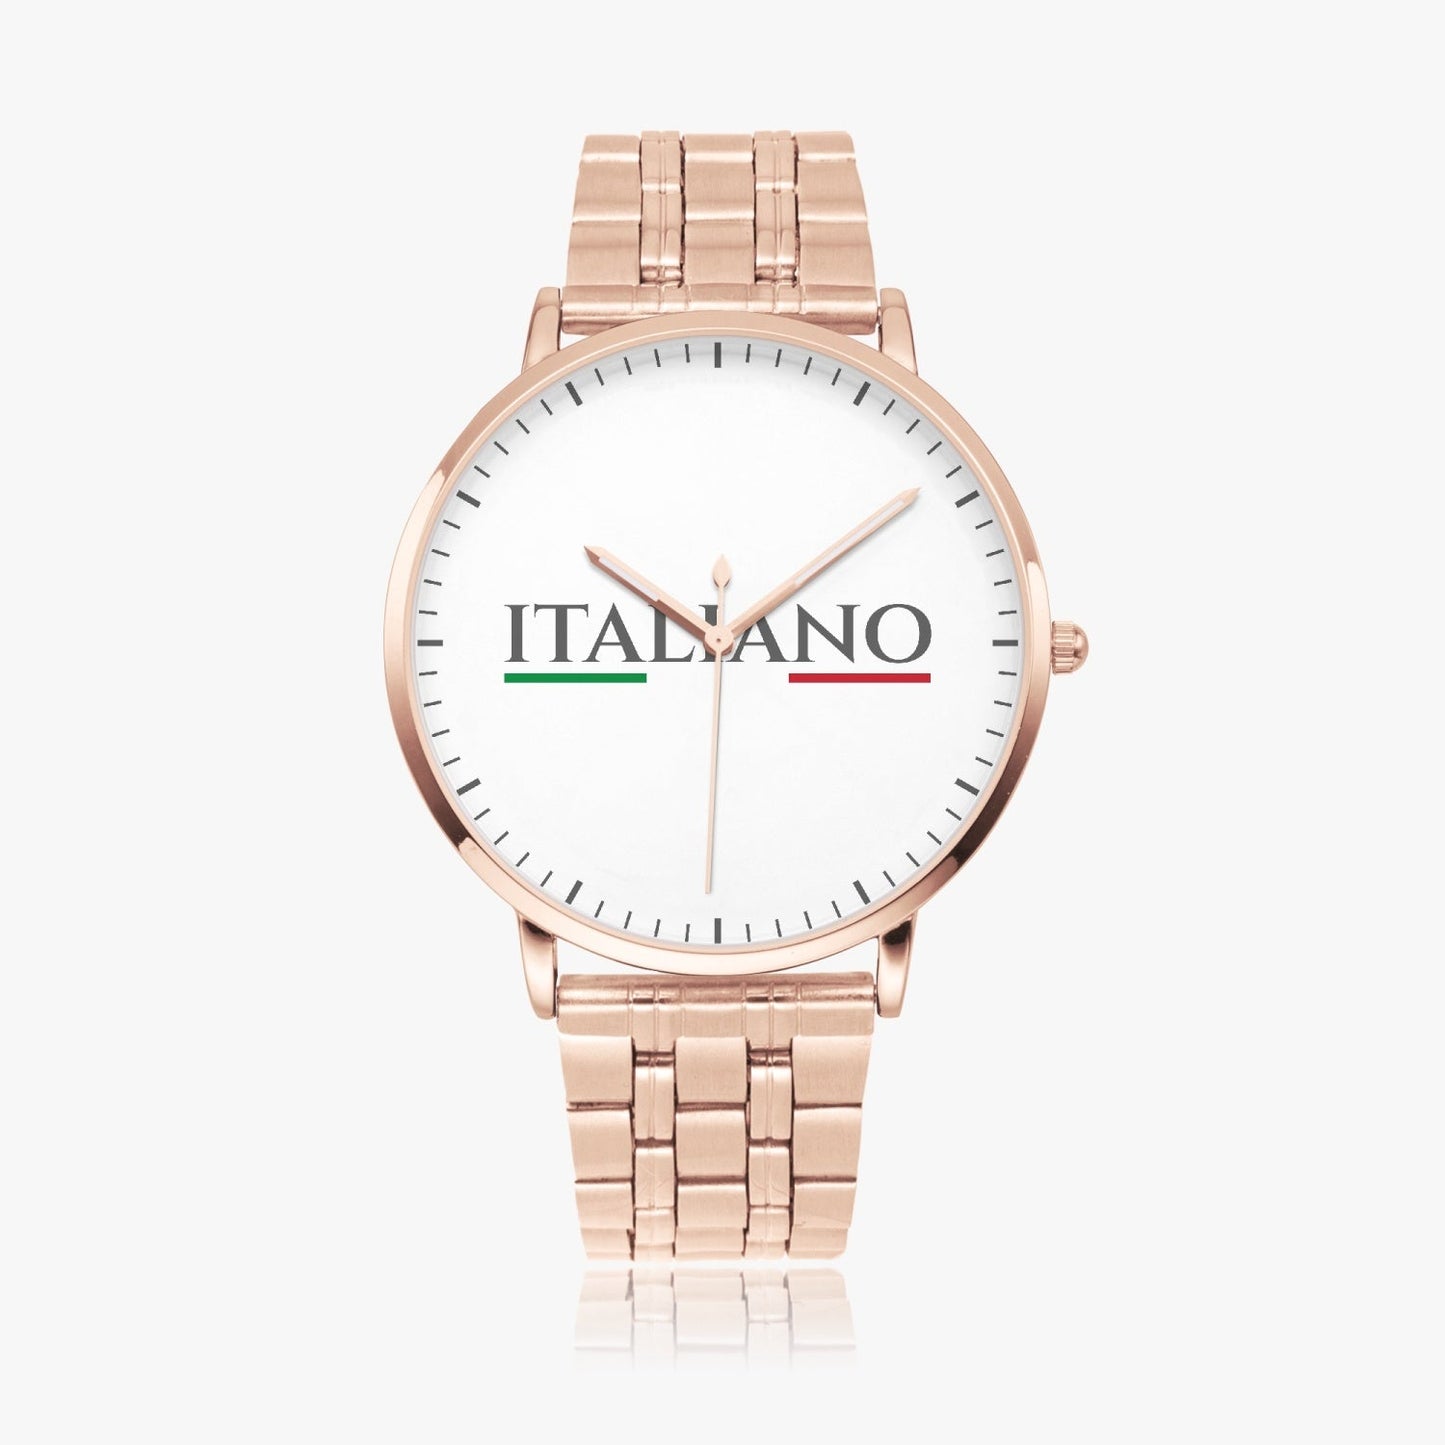 Movimento ultrasottile dell'orologio al quarzo SEIKO Premium - ITALIANO